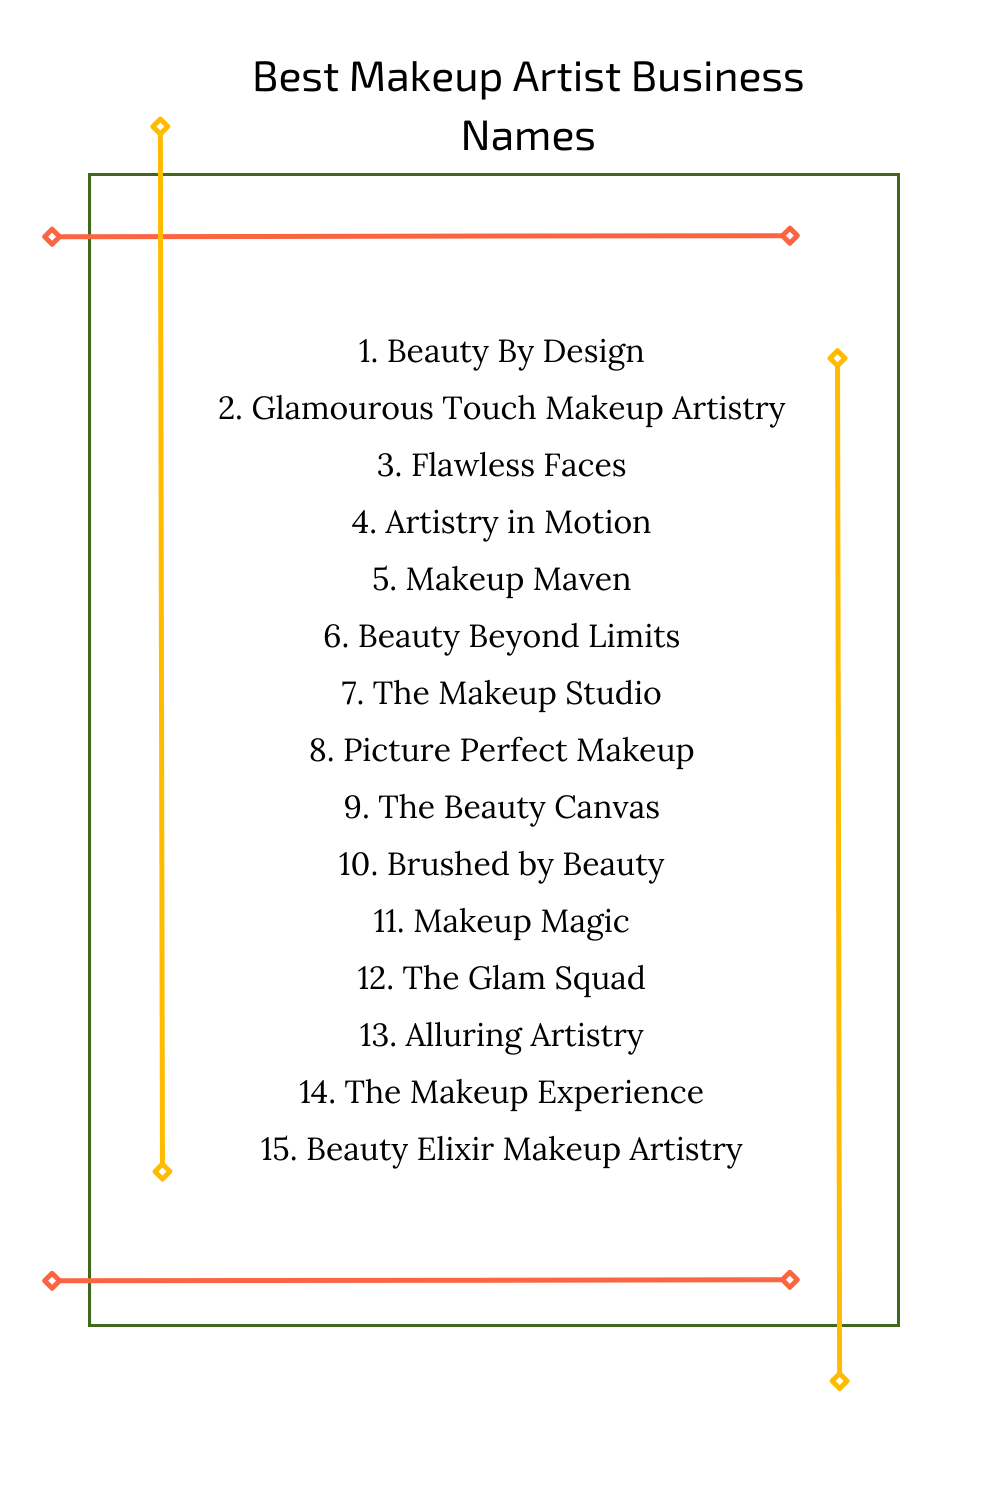 Best Makeup Artist Business Names